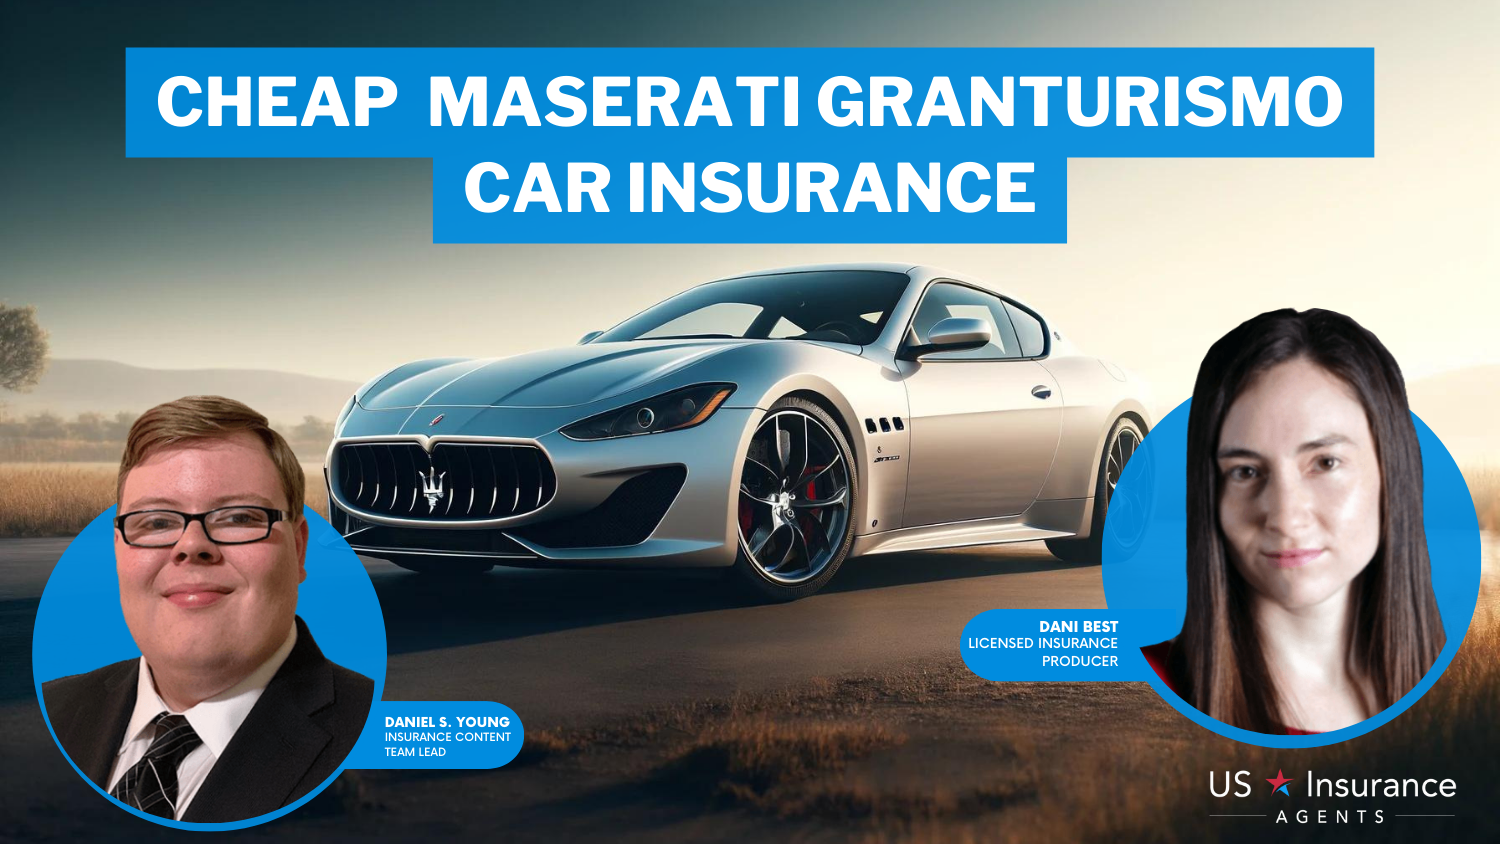 Cheap Maserati GranTurismo Car Insurance: Erie, American family, and Farmers